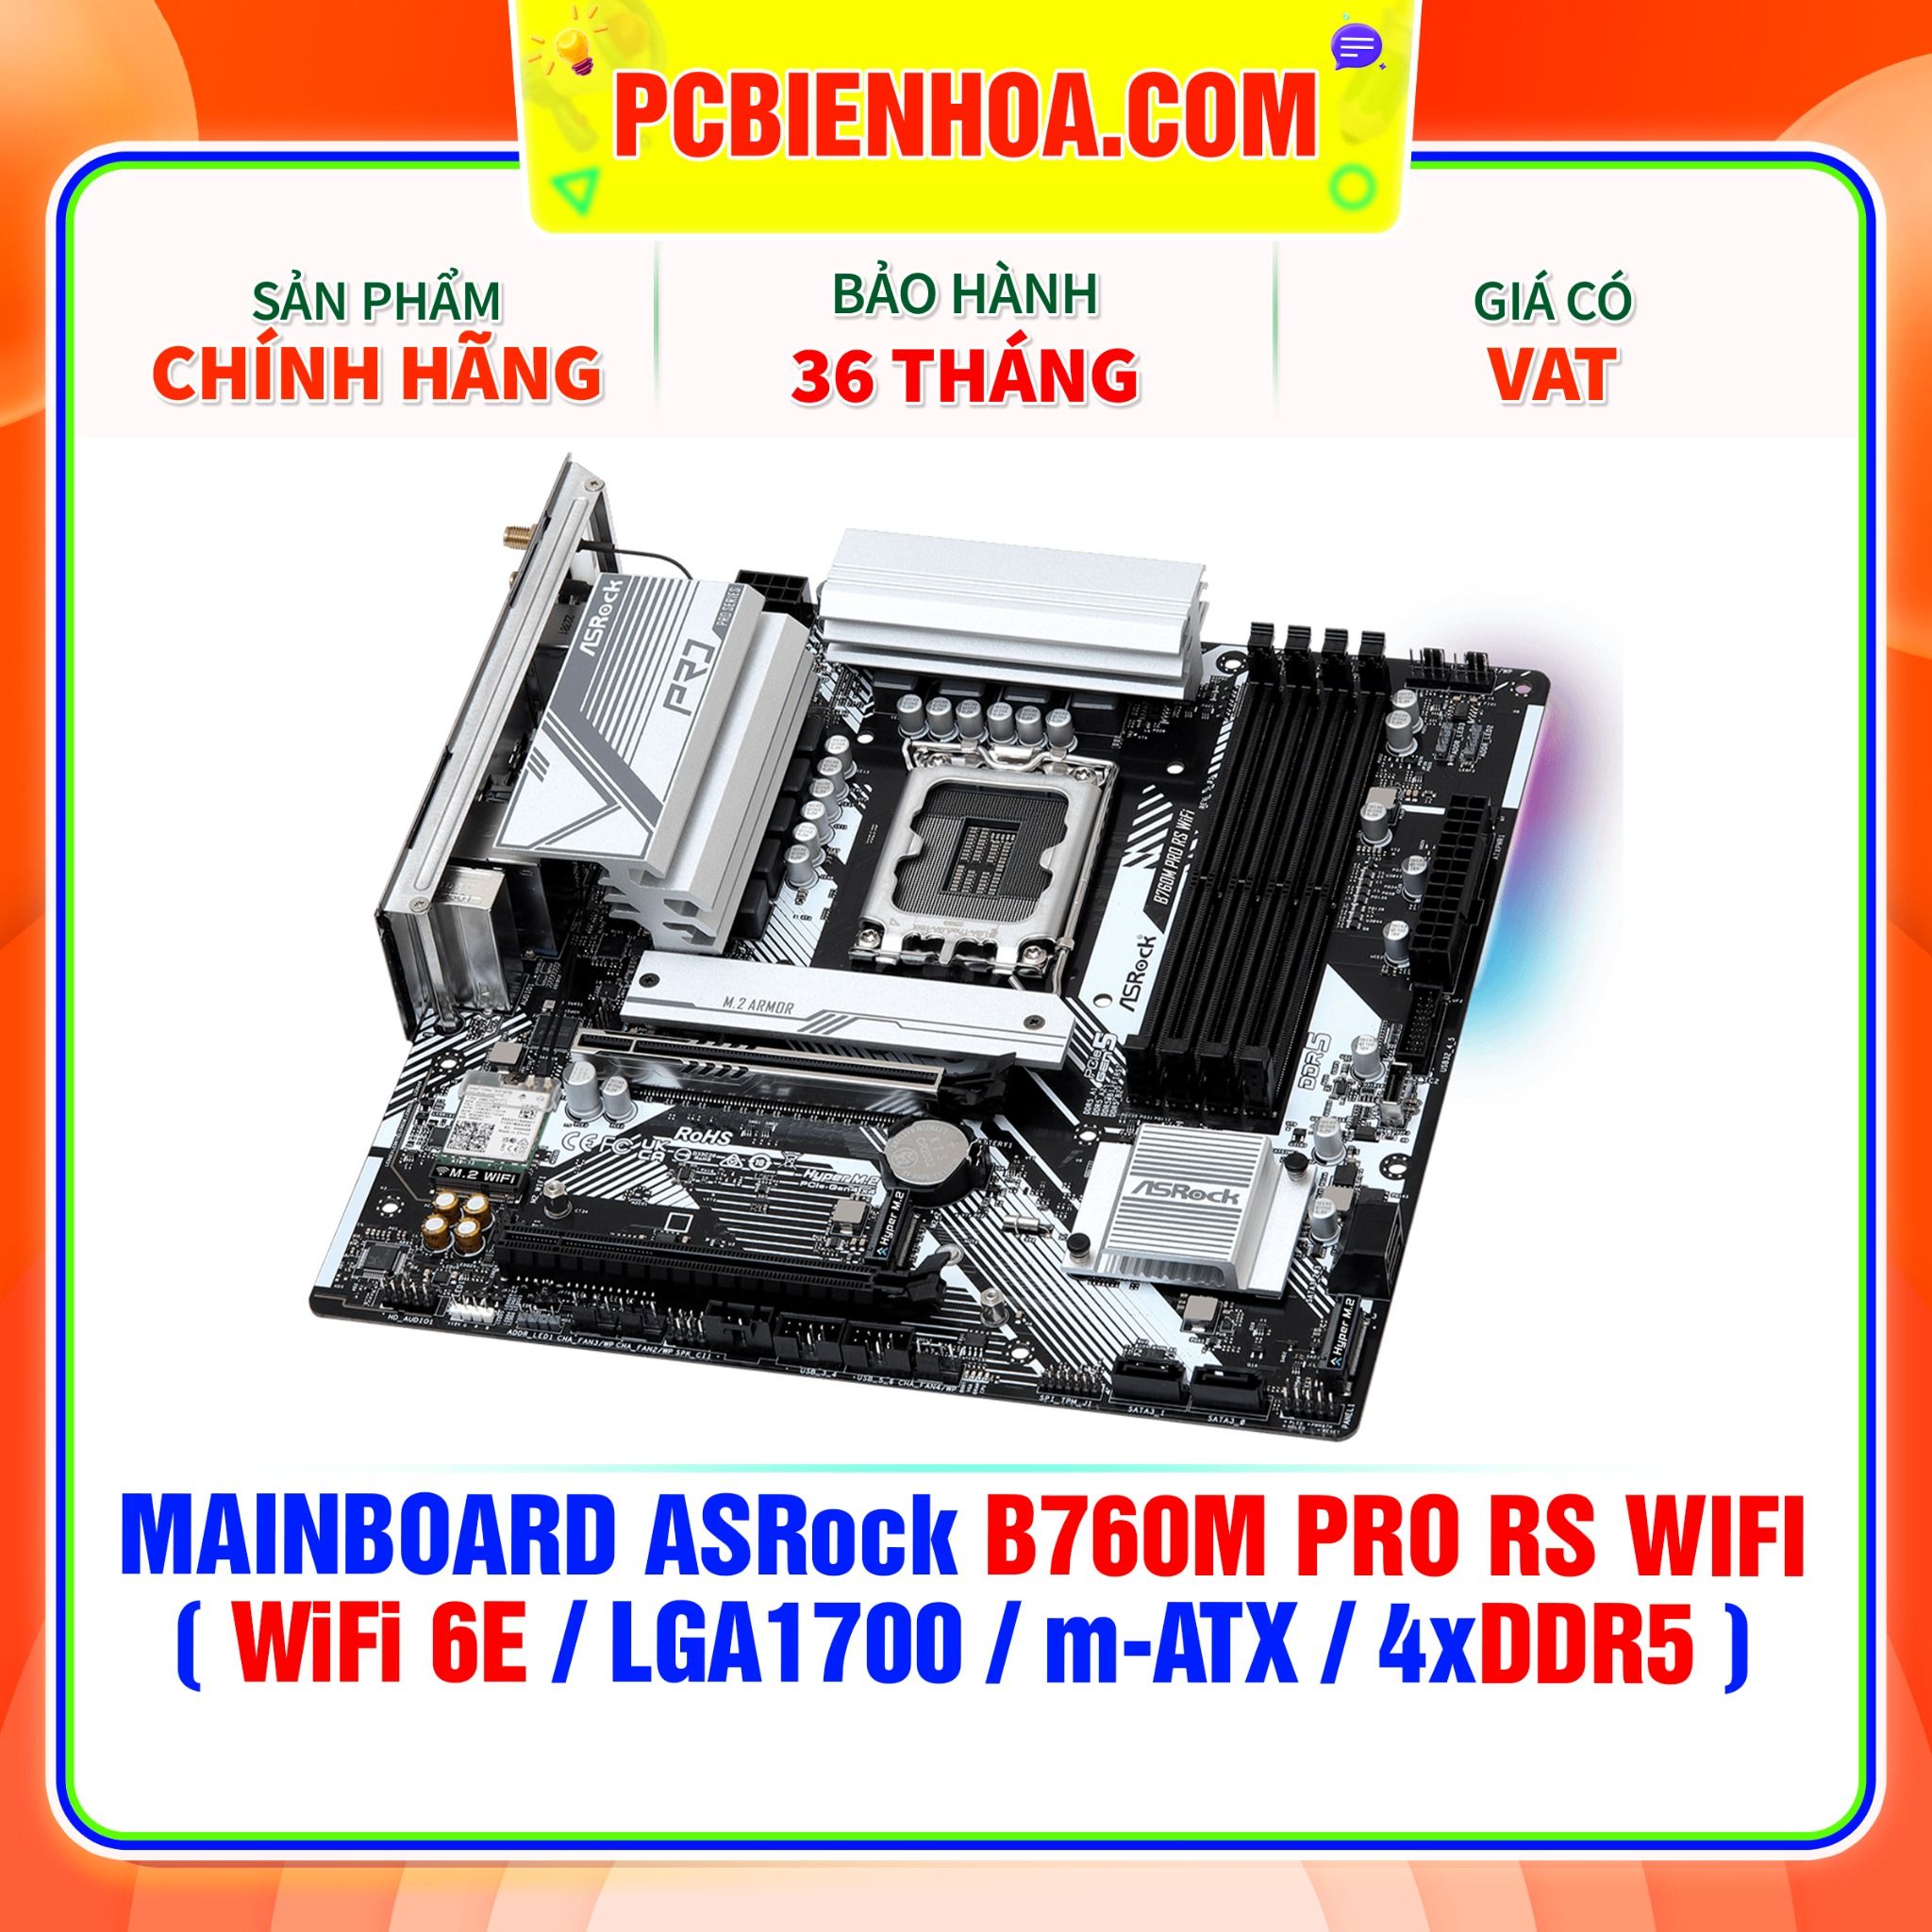  DDR5 - MAINBOARD ASRock B760M PRO RS WIFI ( WiFi 6E / LGA1700 / m-ATX / 4xDDR5 ) 